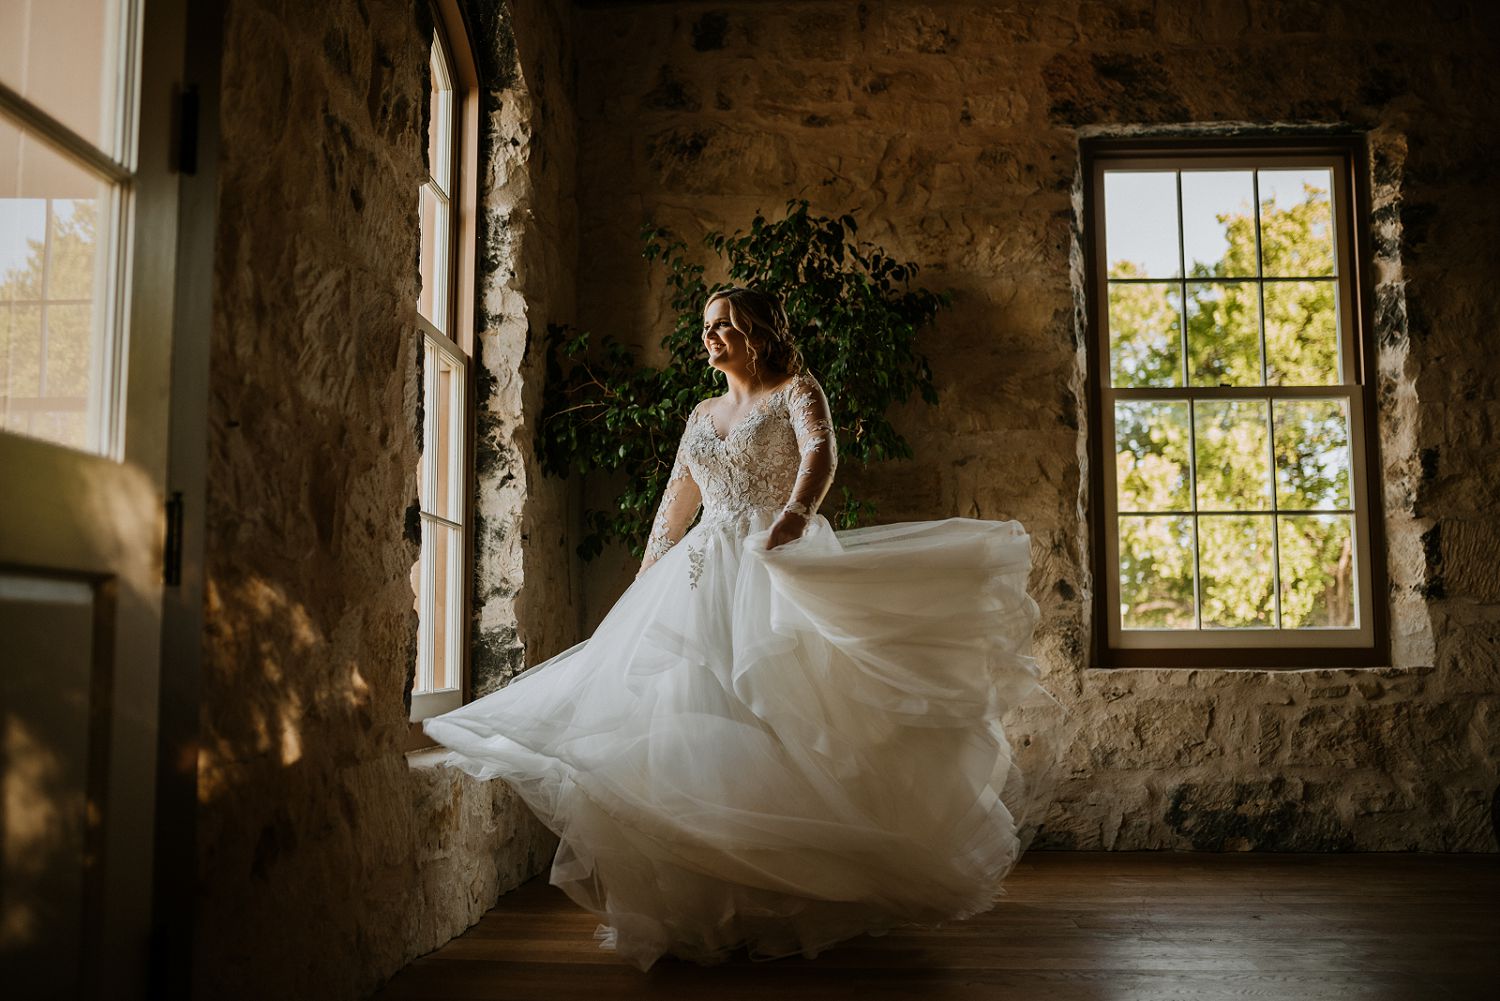 bride spinning around in dress